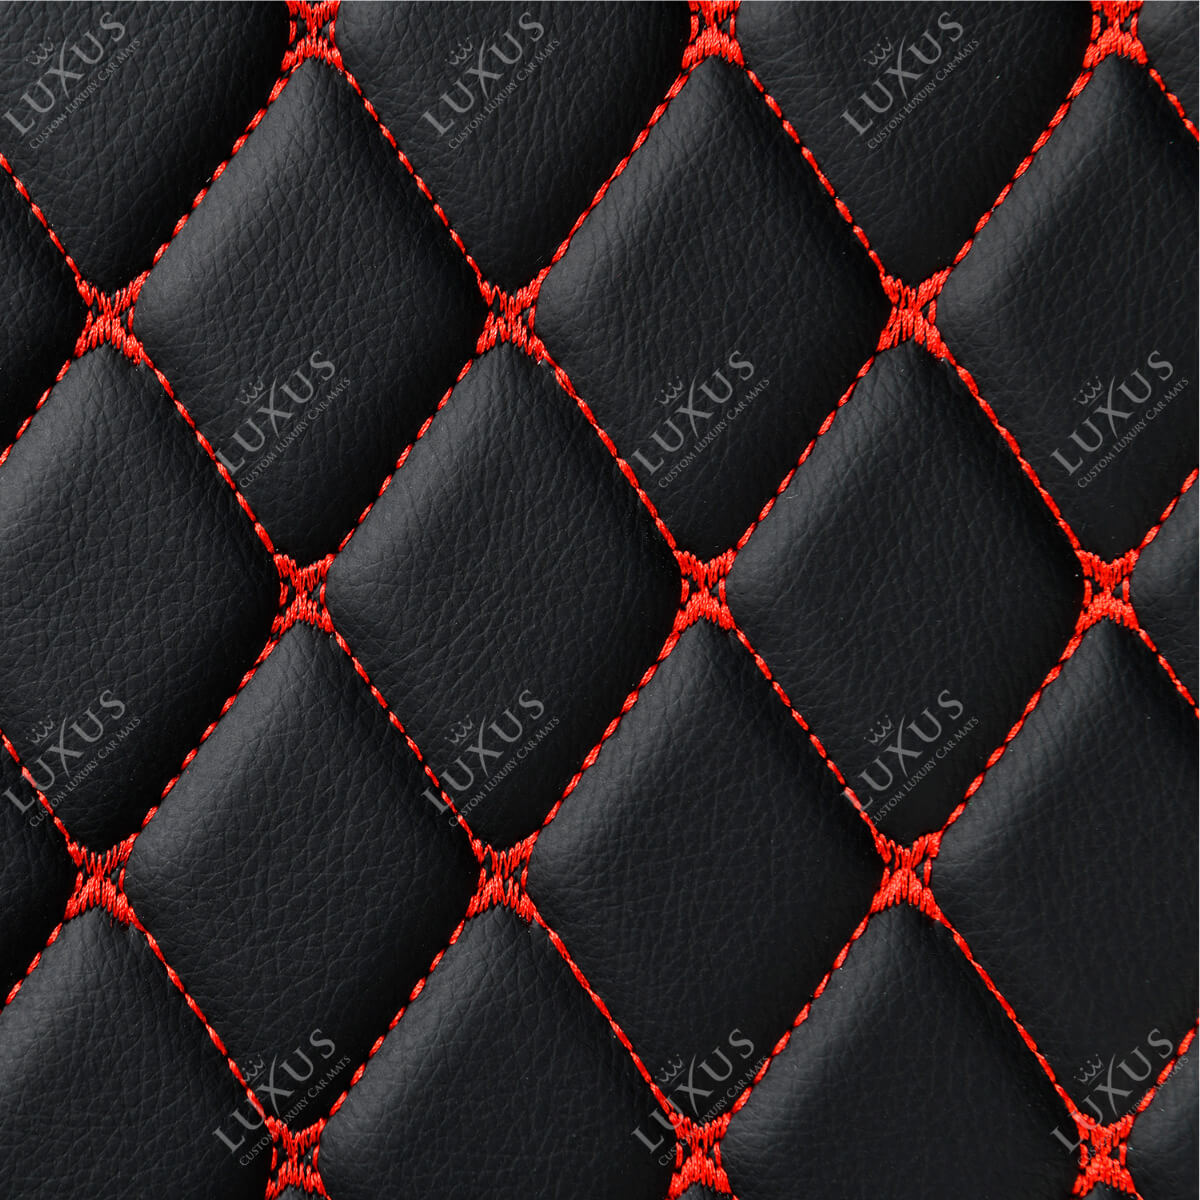 Luxus Car Mats™ – Luxus-Leder-Kofferraum-/Kofferraummatte mit schwarzen und roten Nähten